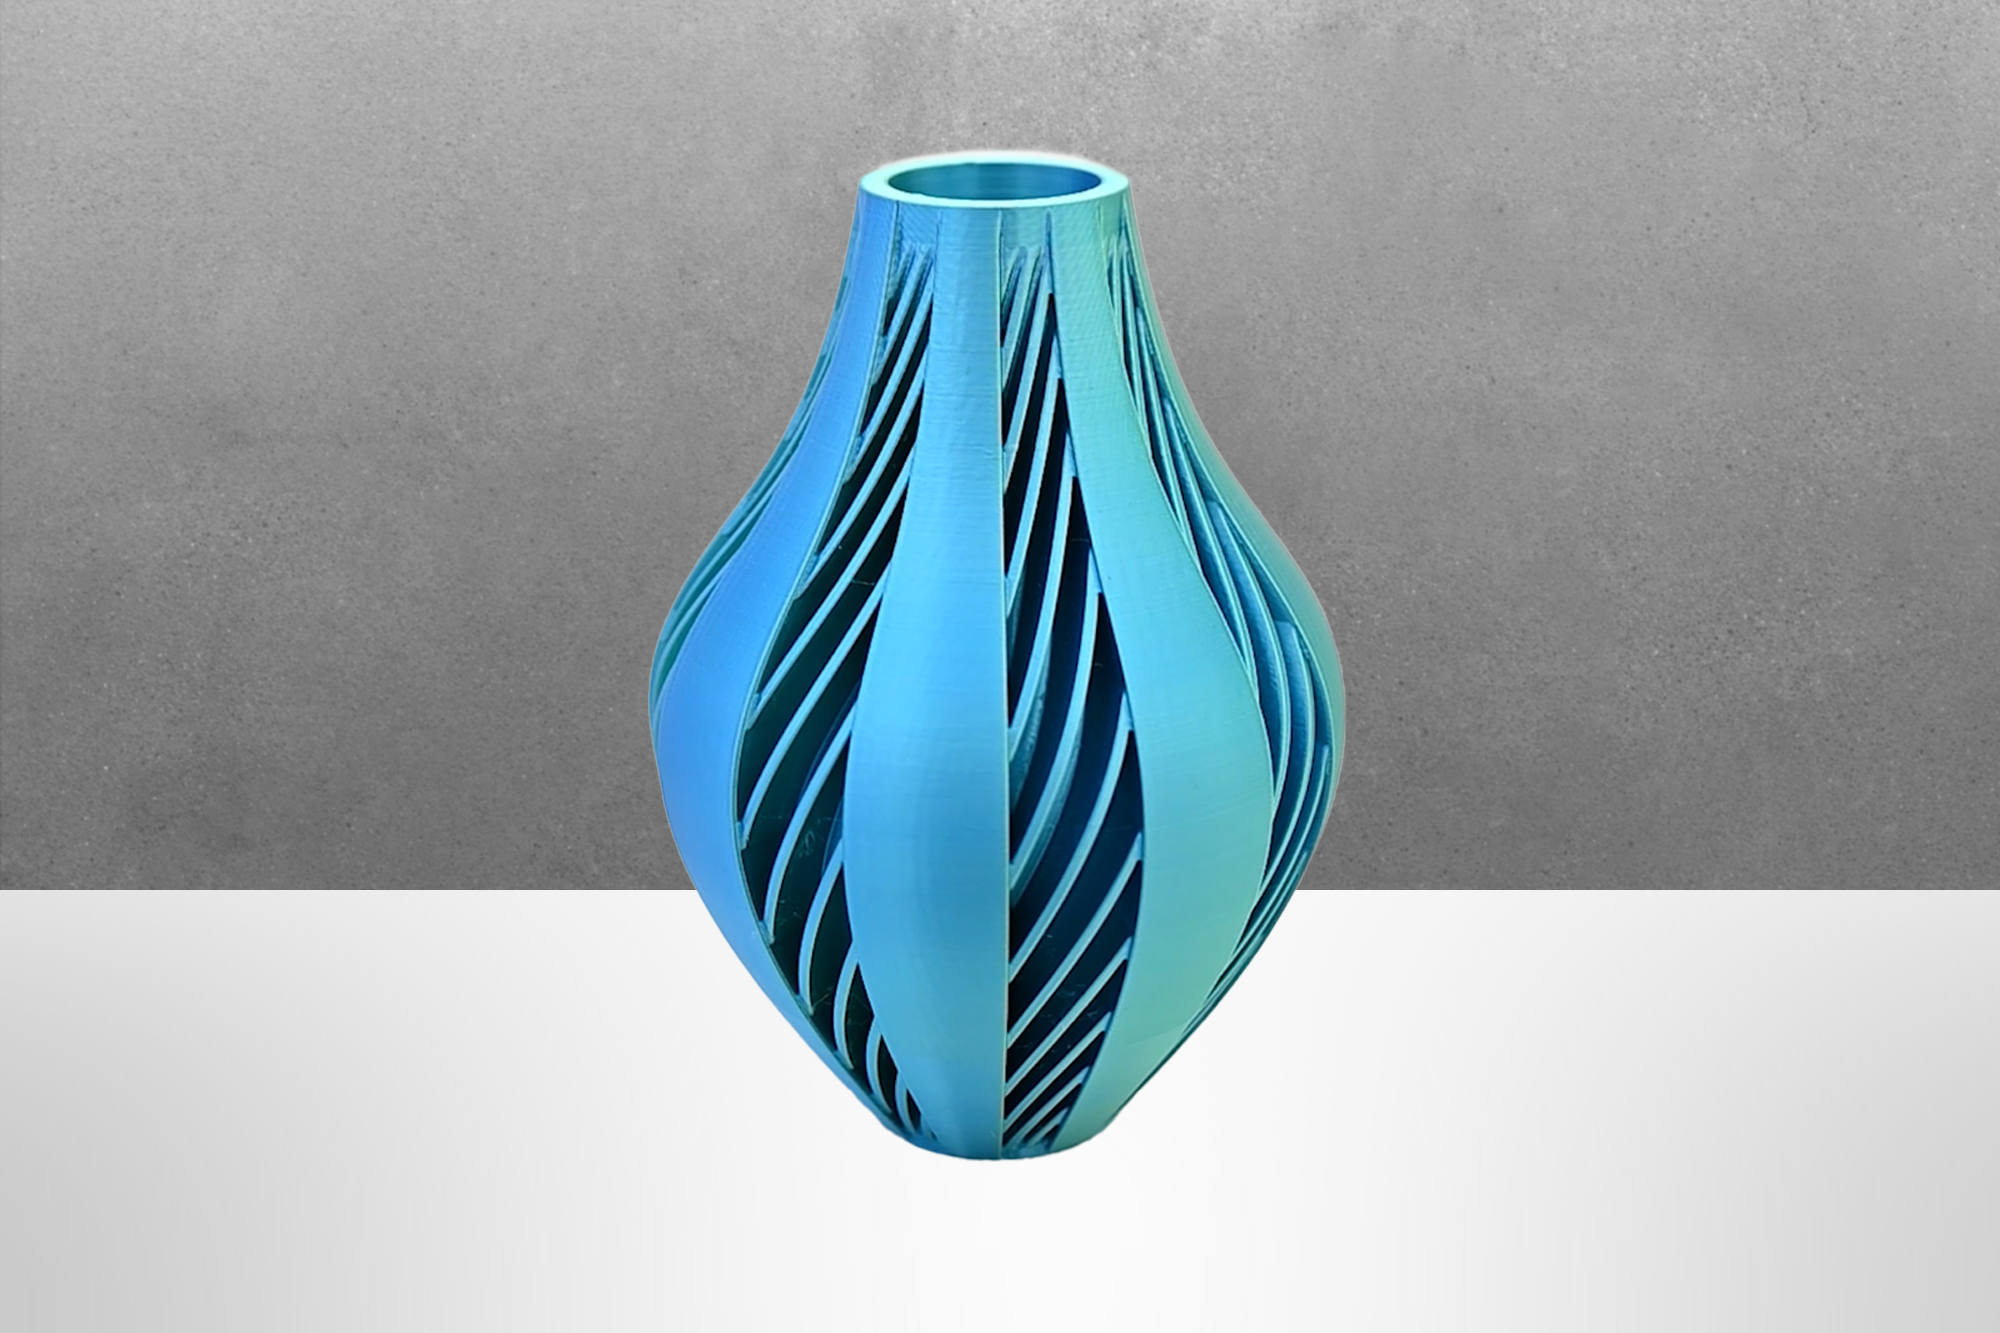 The Yurio Vase Special Edition